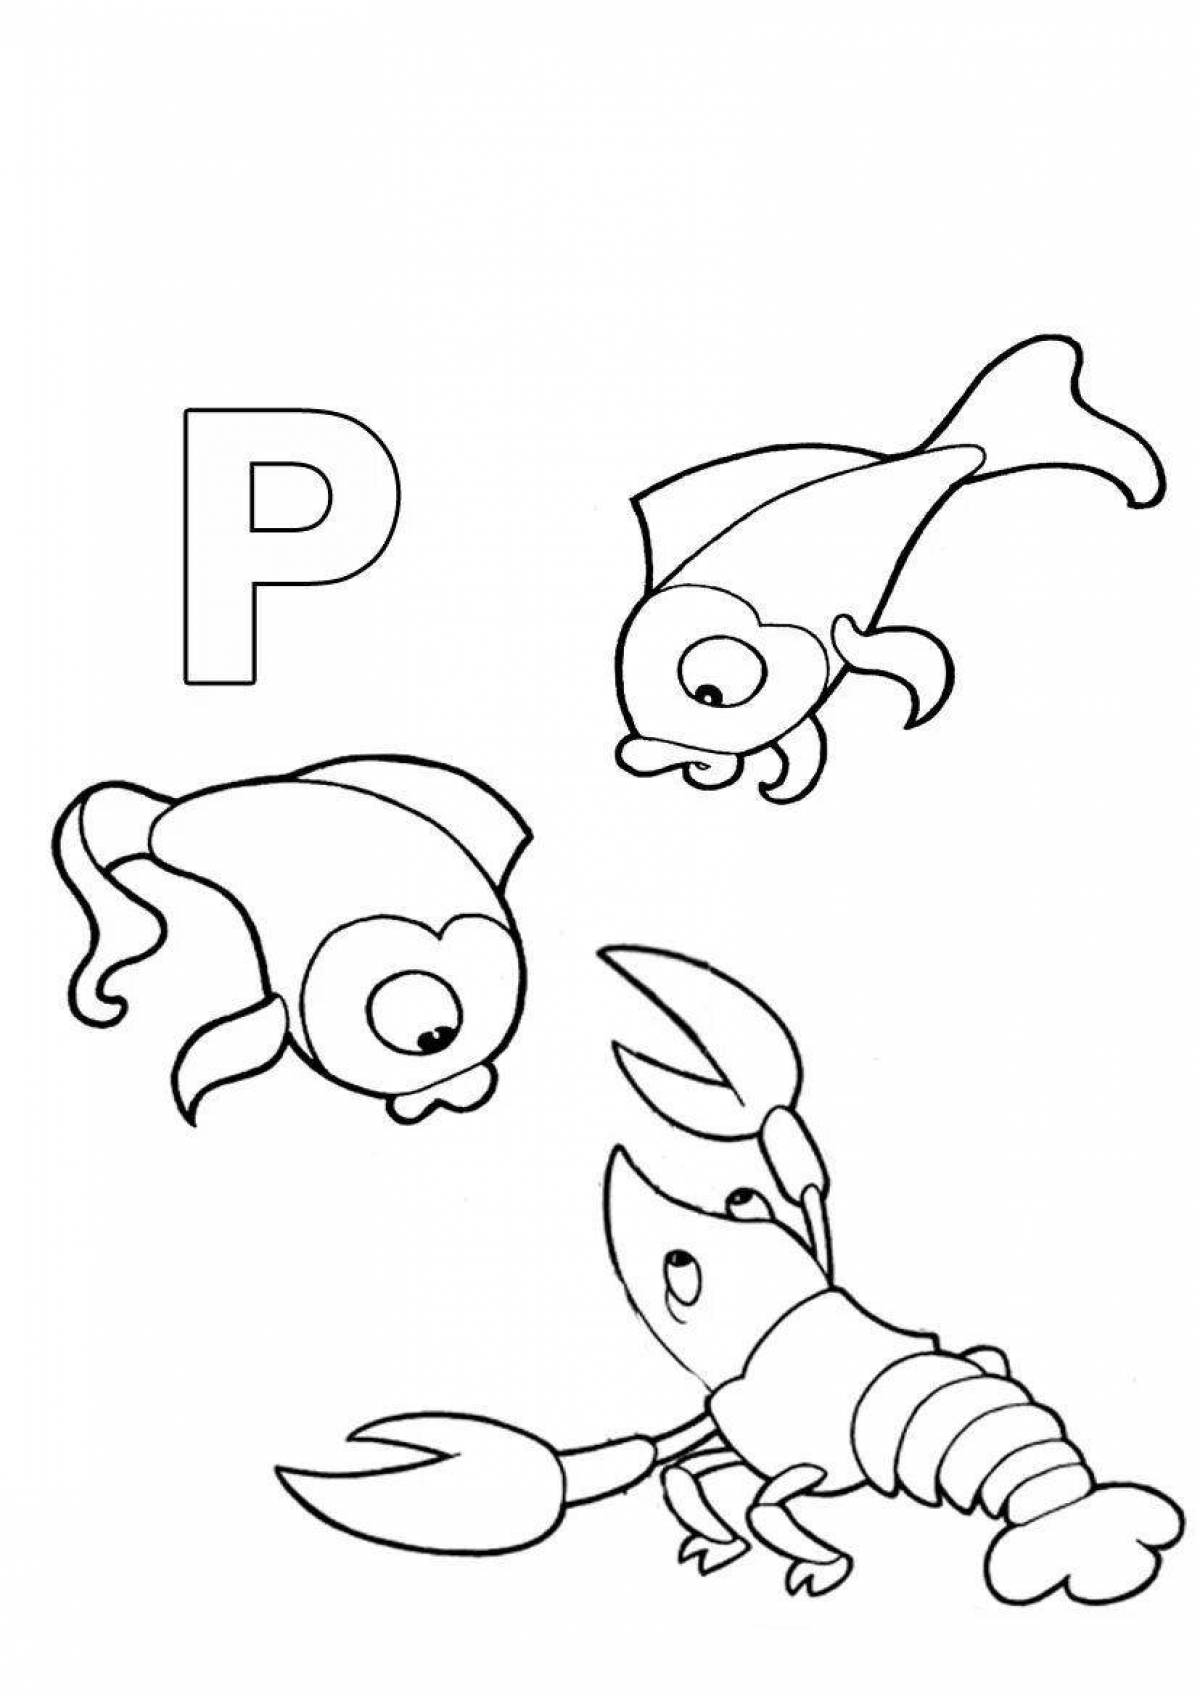 Веселая буква p раскраска для детей